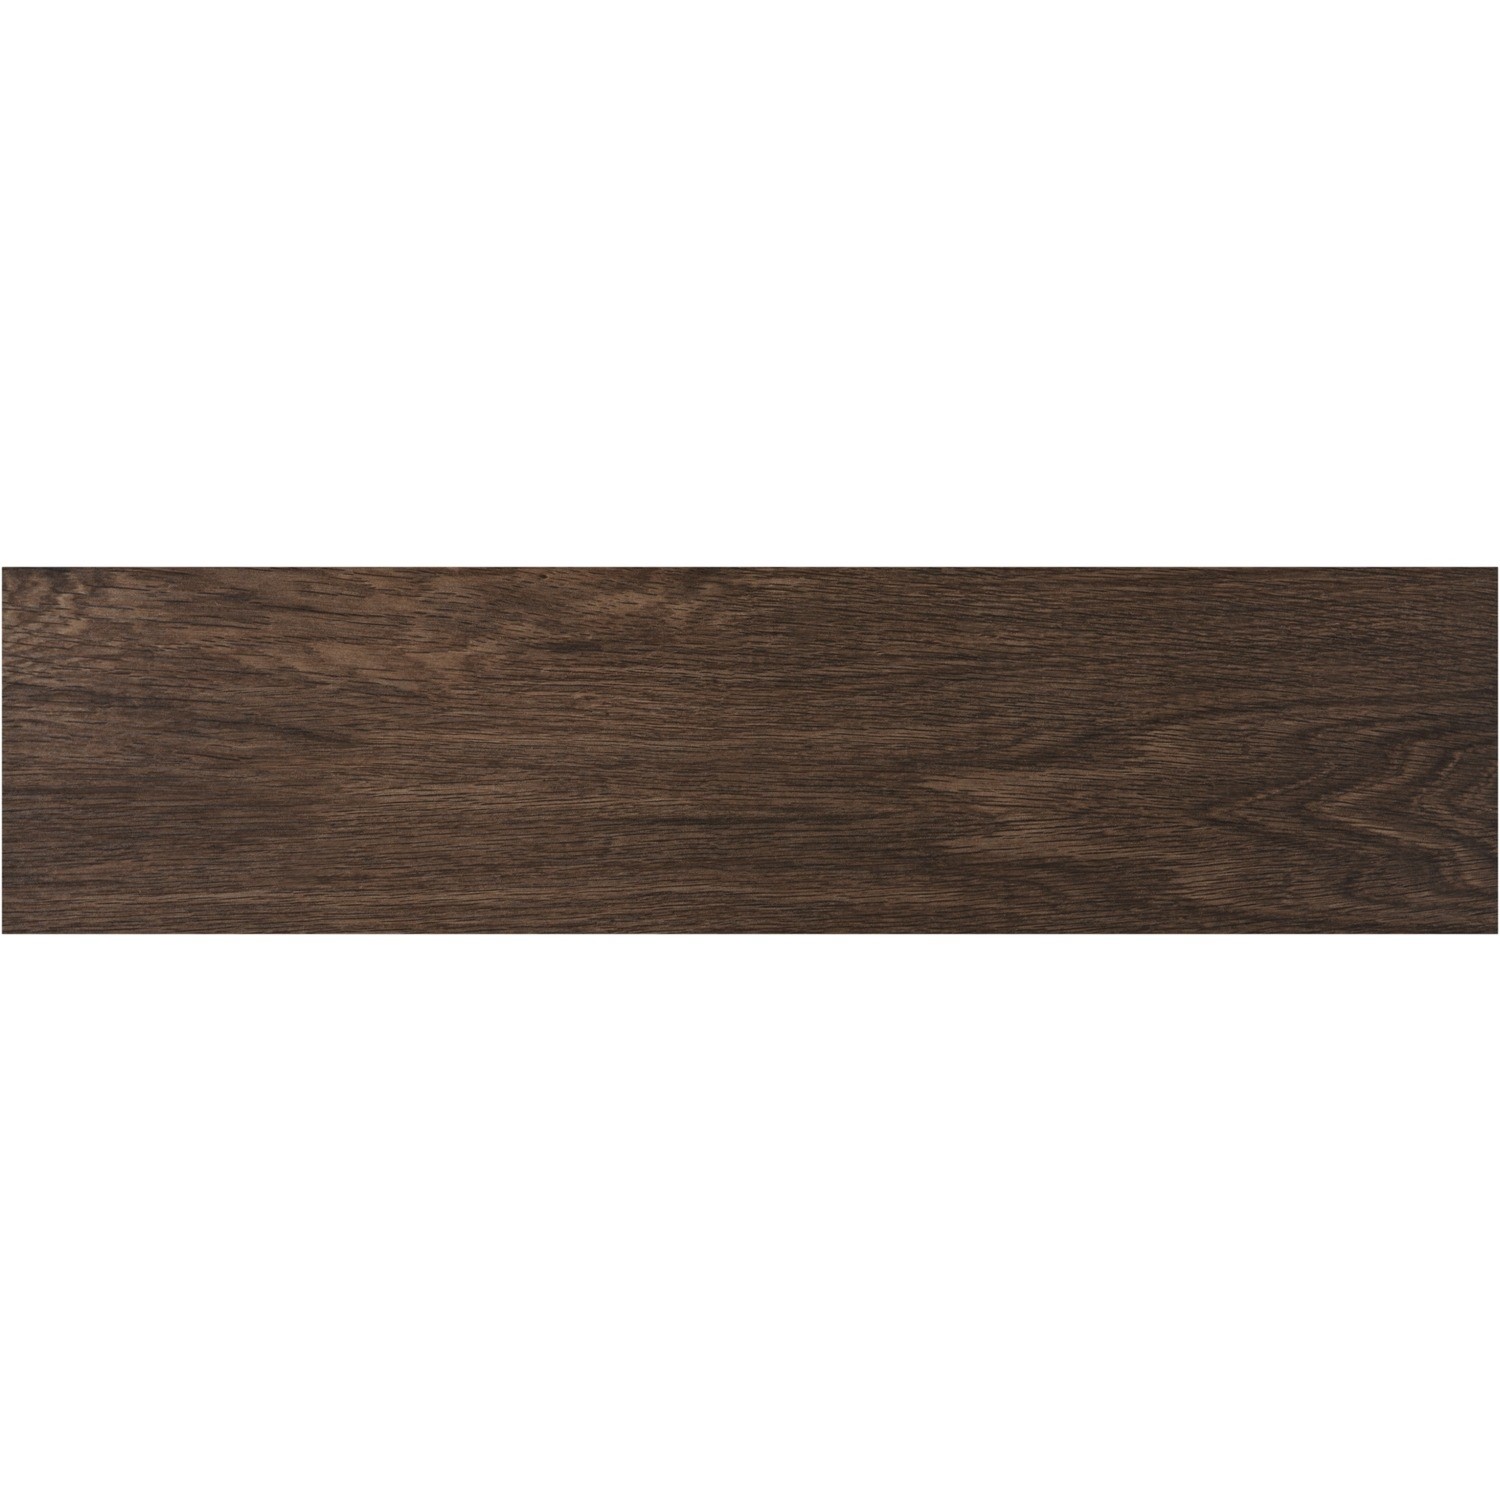 Dark Glazed Wood Effect Floor Tile 15 x 60cm - Aspen